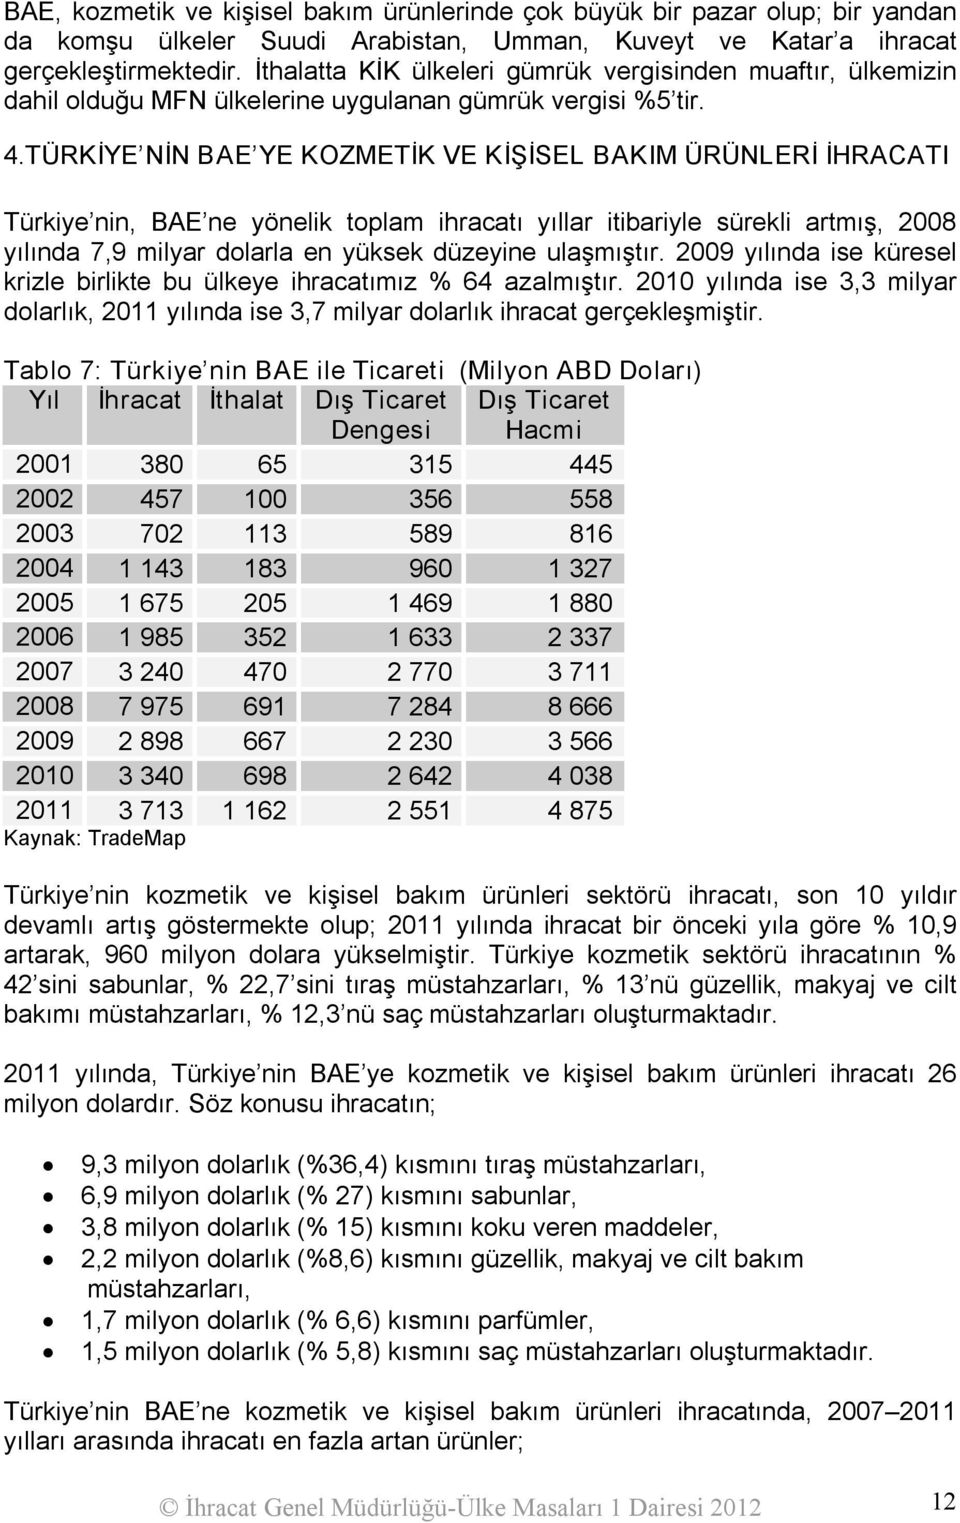 TÜRKİYE NİN BAE YE KOZMETİK VE KİŞİSEL BAKIM ÜRÜNLERİ İHRACATI Türkiye nin, BAE ne yönelik toplam ihracatı yıllar itibariyle sürekli artmış, 2008 yılında 7,9 milyar dolarla en yüksek düzeyine